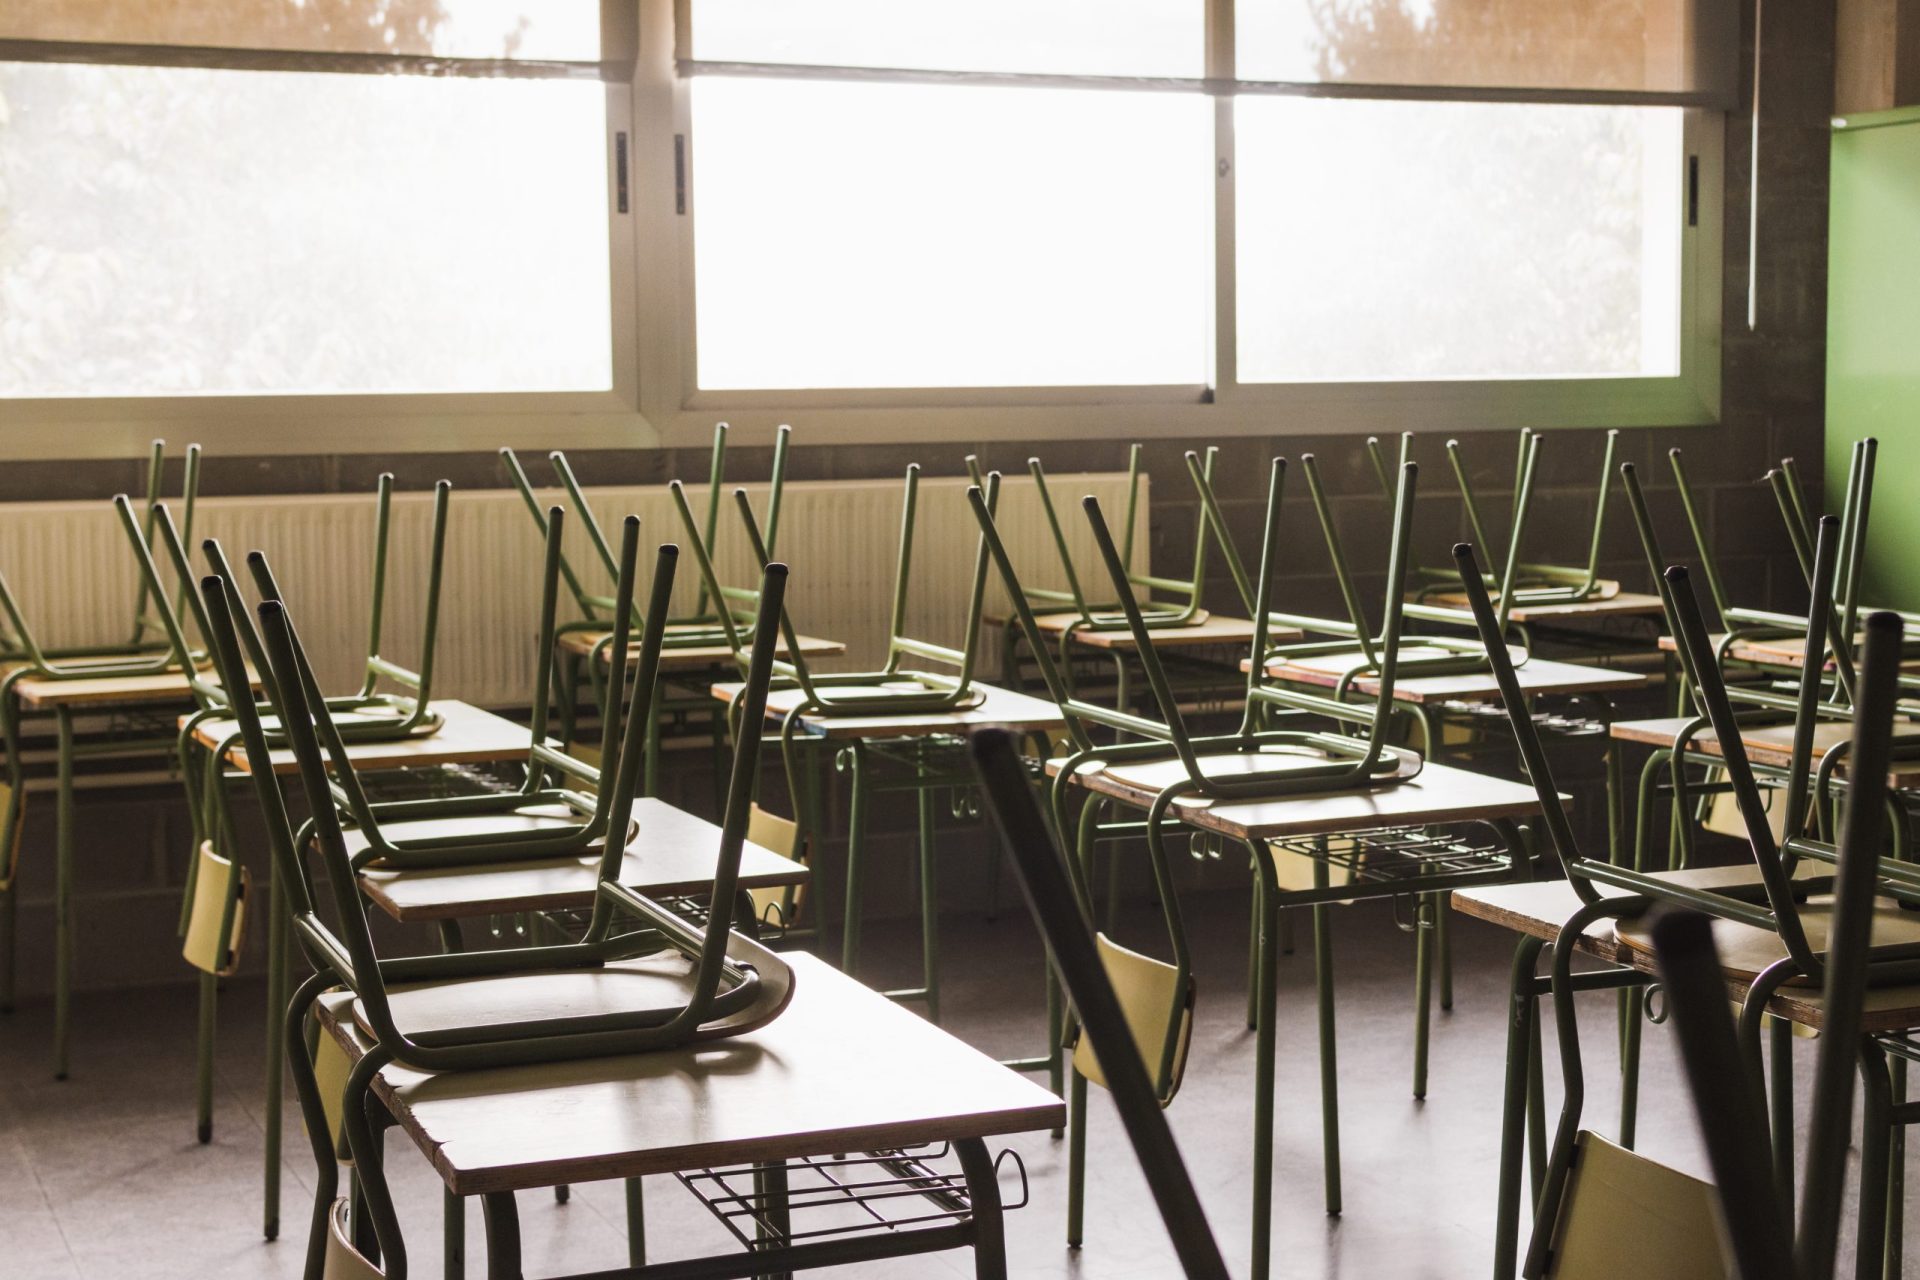 Escola de Carregal do Sal encerrada devido a aumento de casos de covid-19